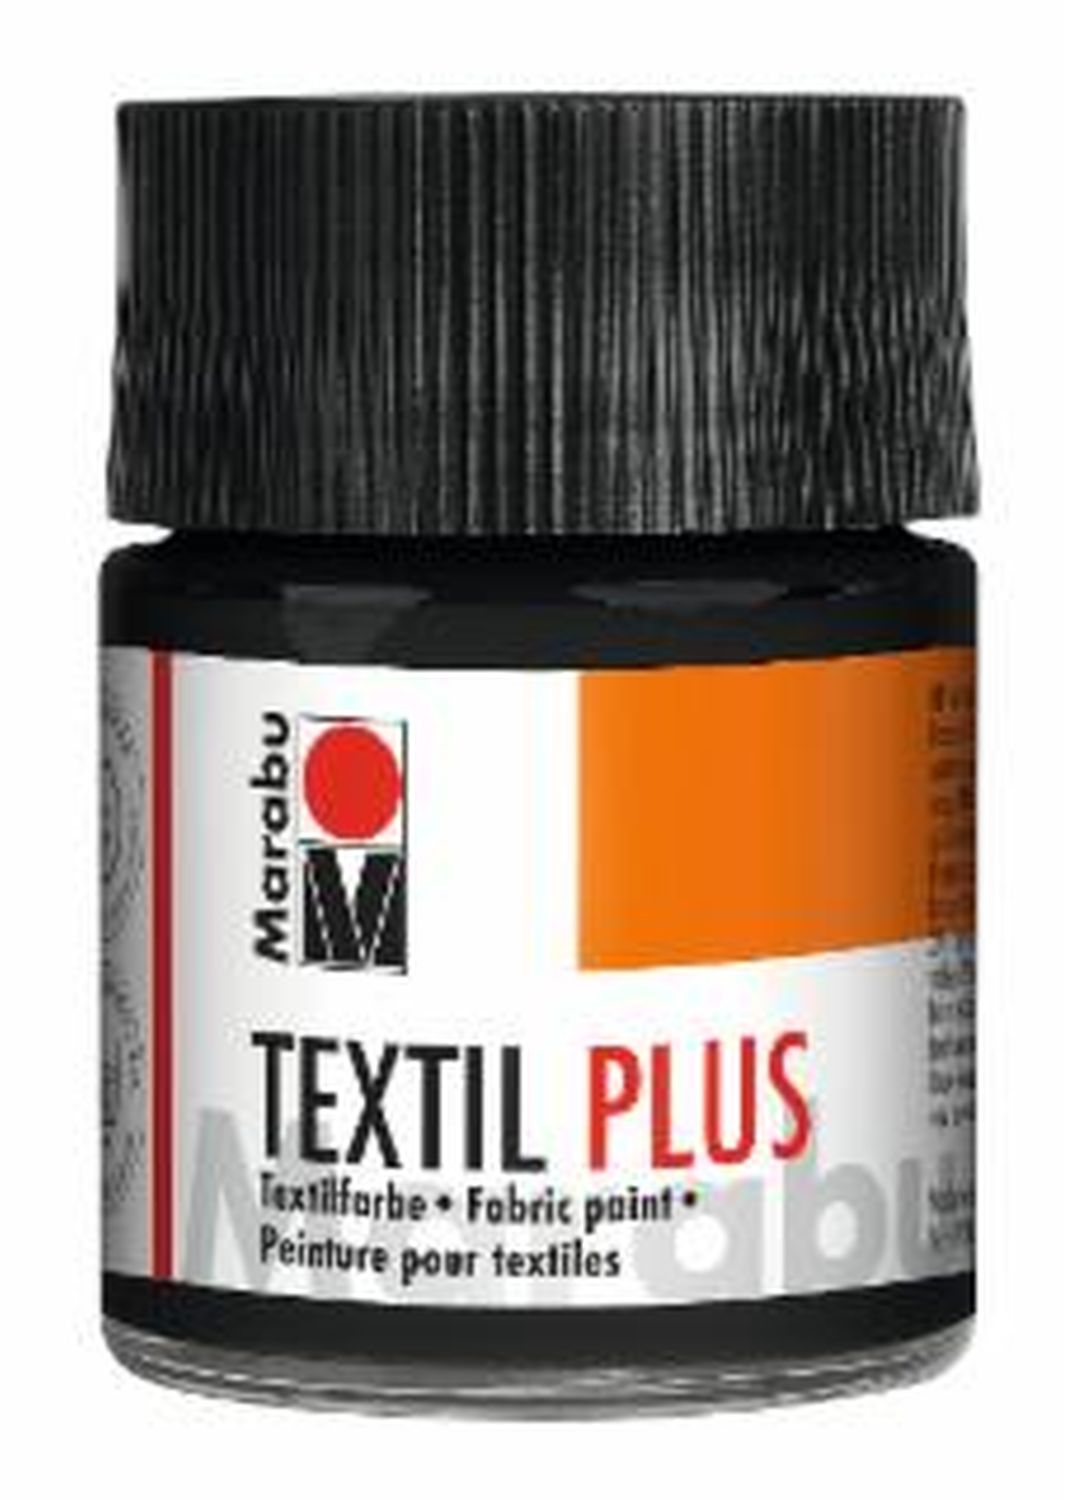 Textil plus - Schwarz 073, 50 ml